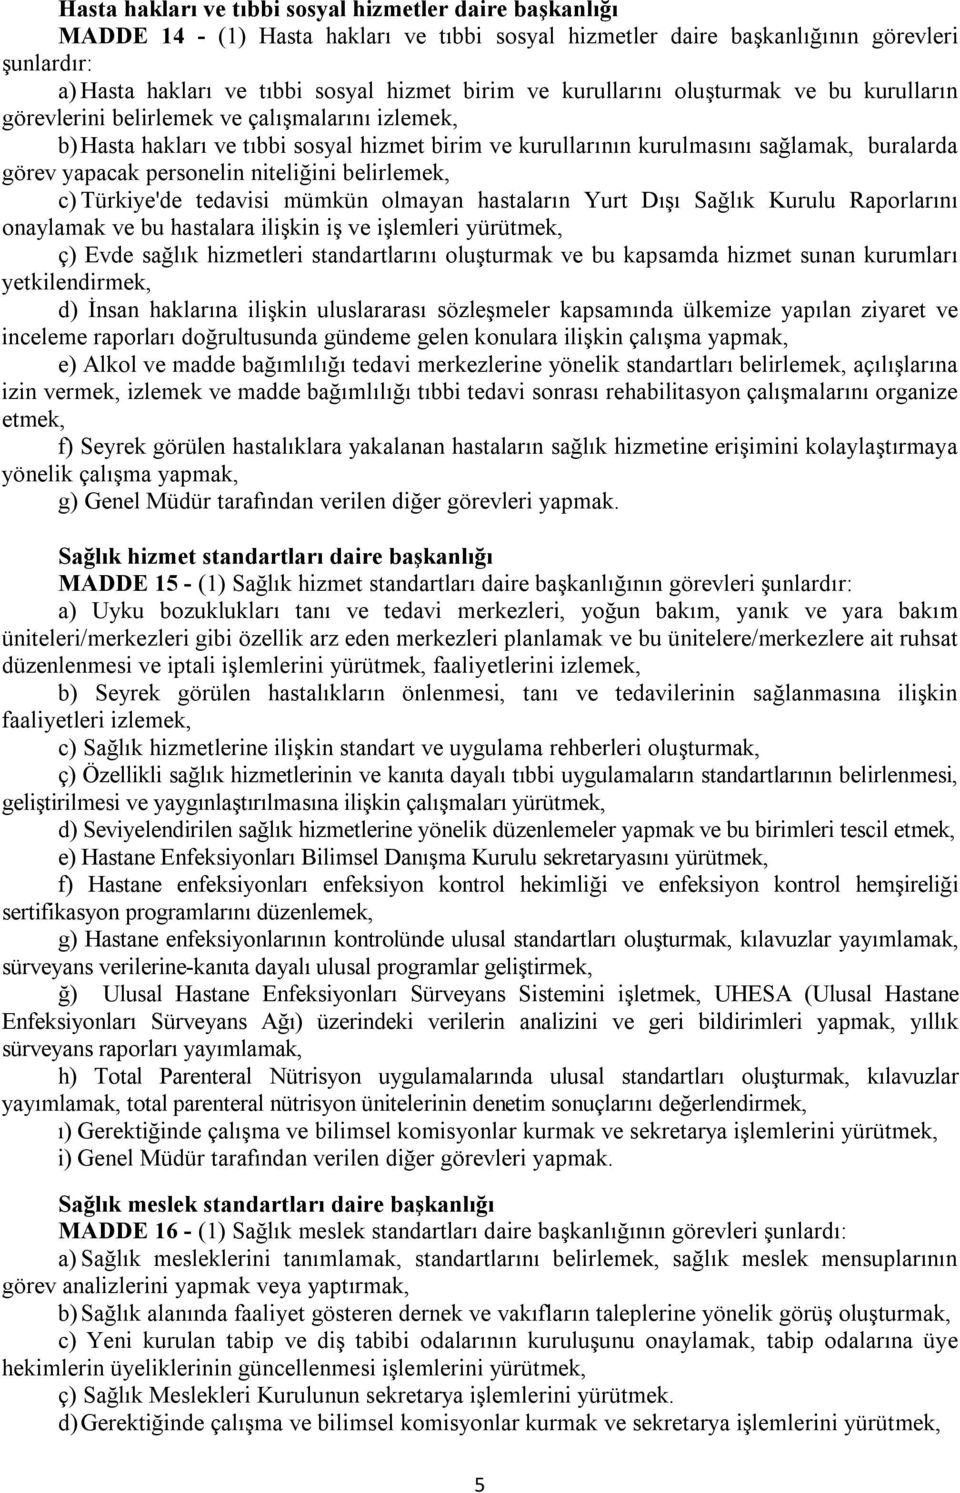 personelin niteliğini belirlemek, c) Türkiye'de tedavisi mümkün olmayan hastaların Yurt Dışı Sağlık Kurulu Raporlarını onaylamak ve bu hastalara ilişkin iş ve işlemleri yürütmek, ç) Evde sağlık